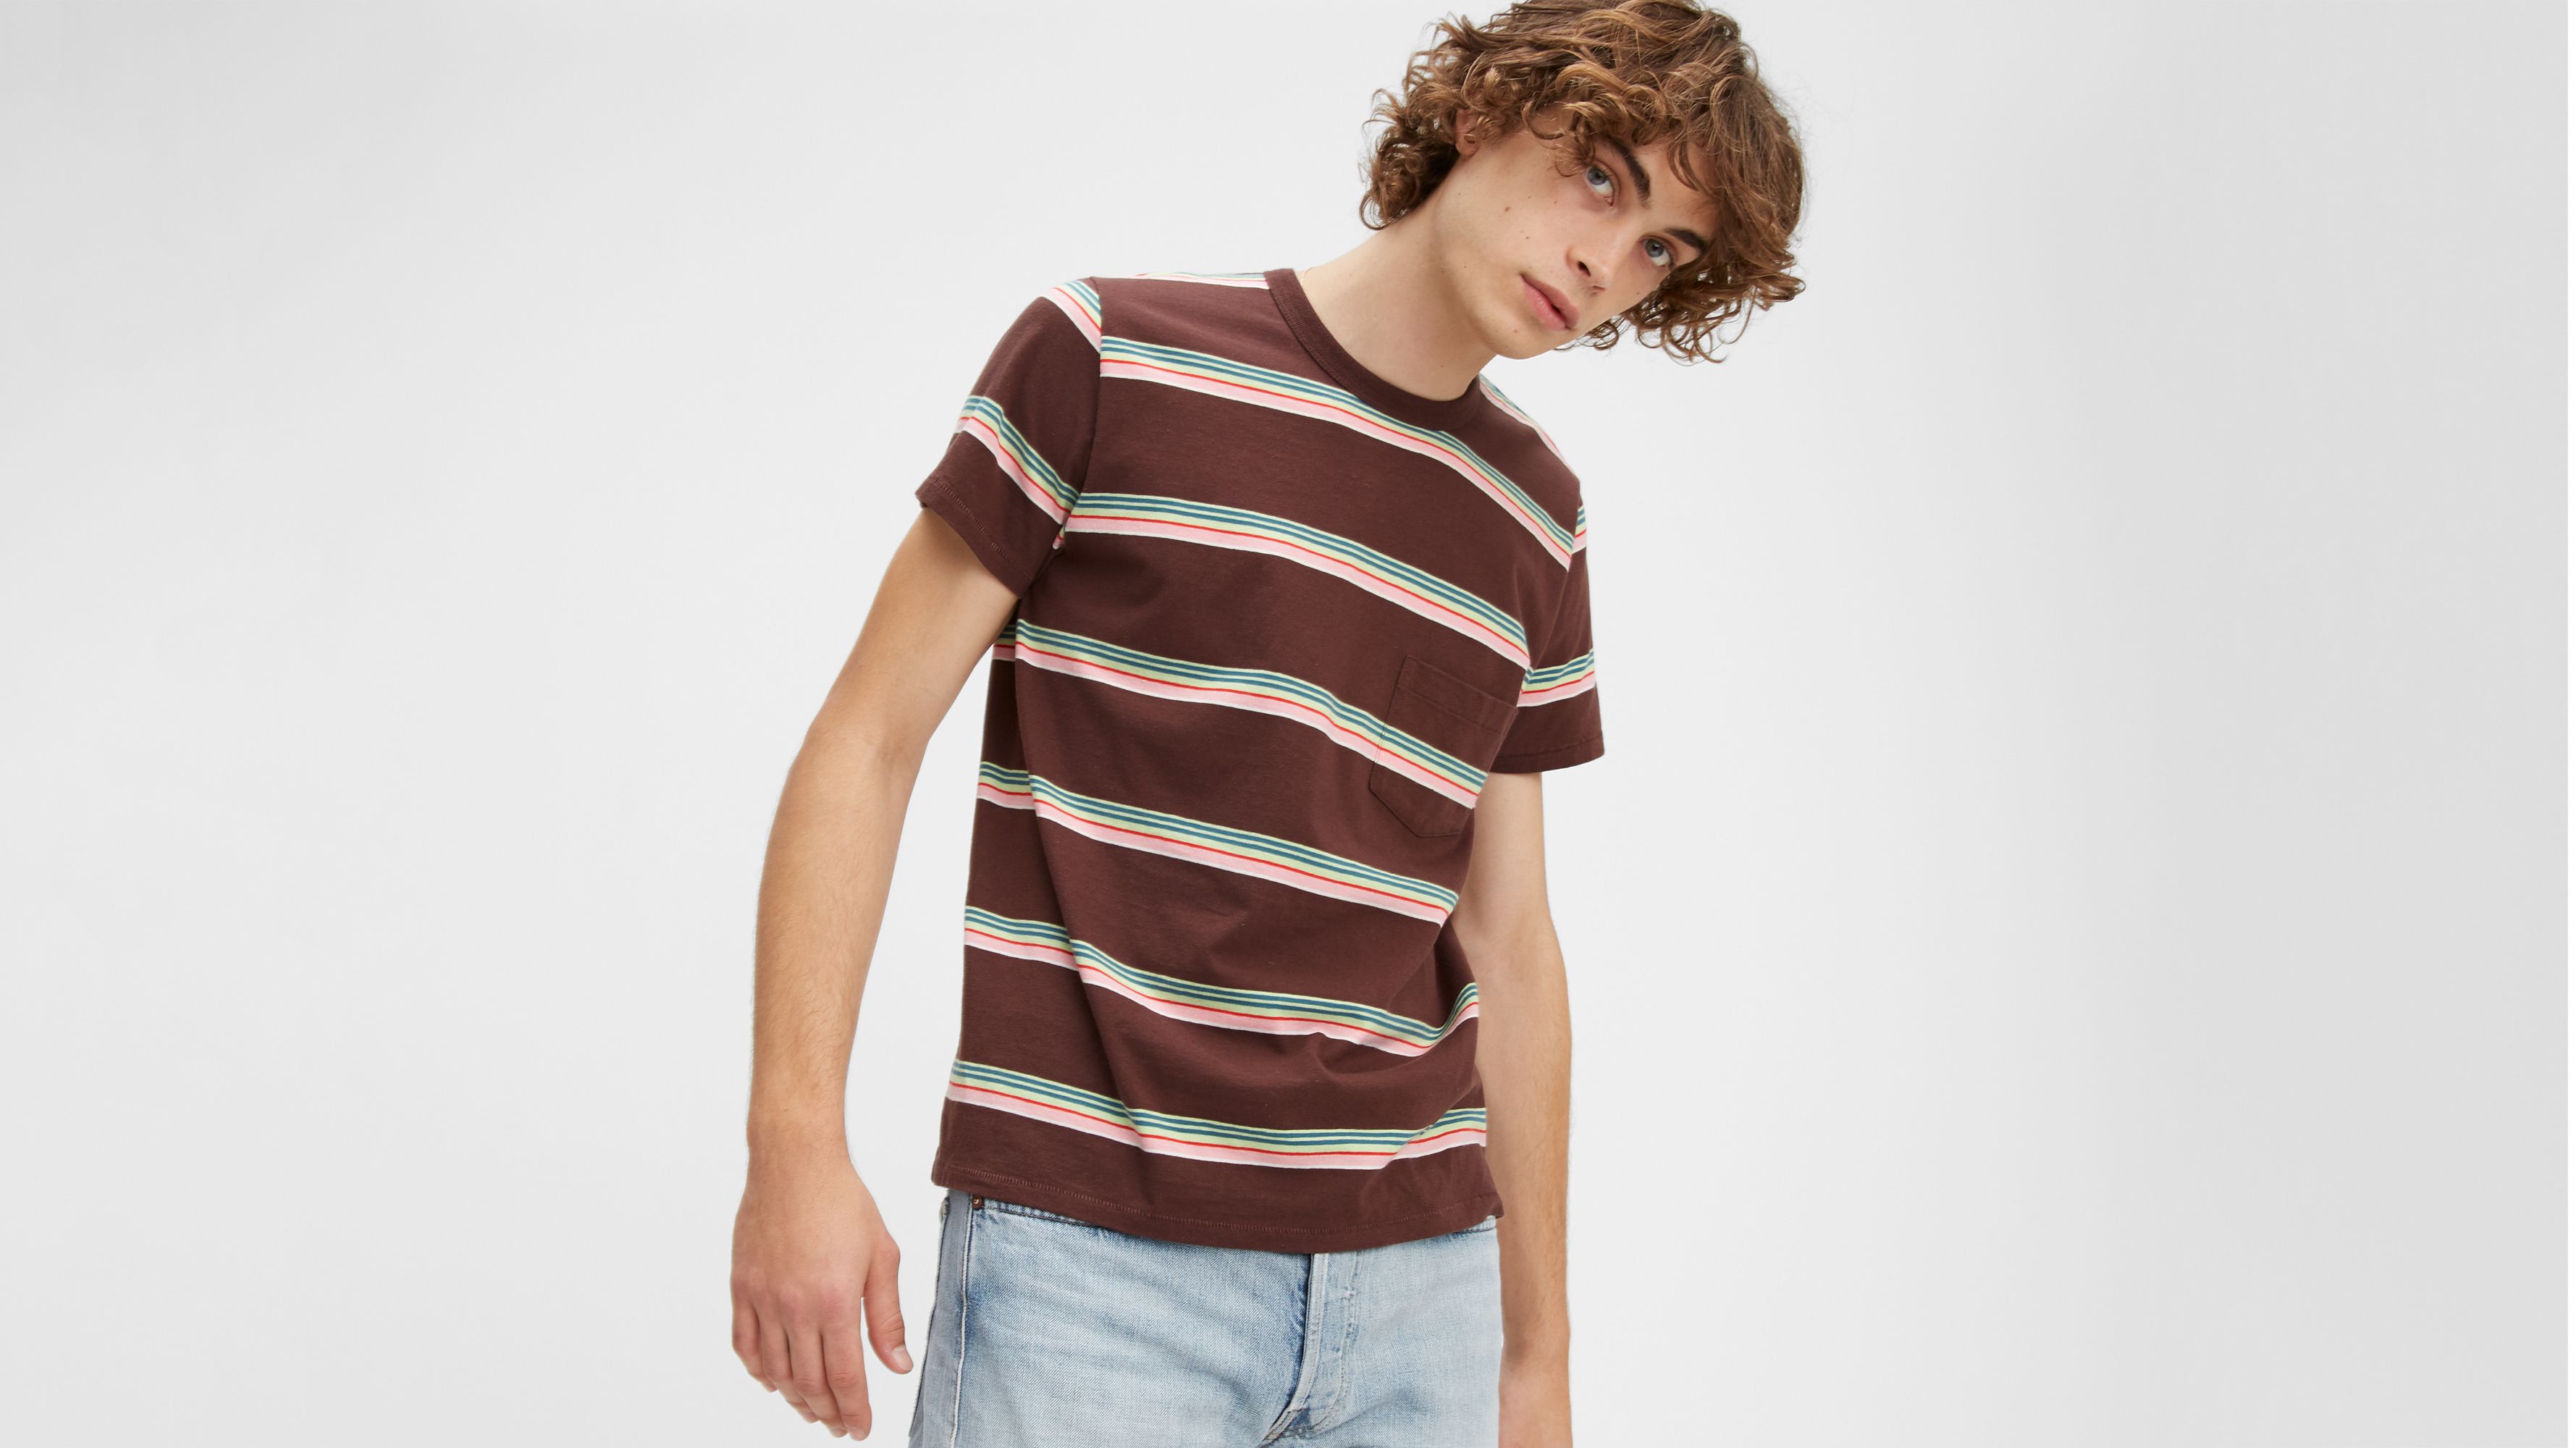 Levis Vintage Clothing Tricolor Casual Stripe T-Shirt Levi's Vintage